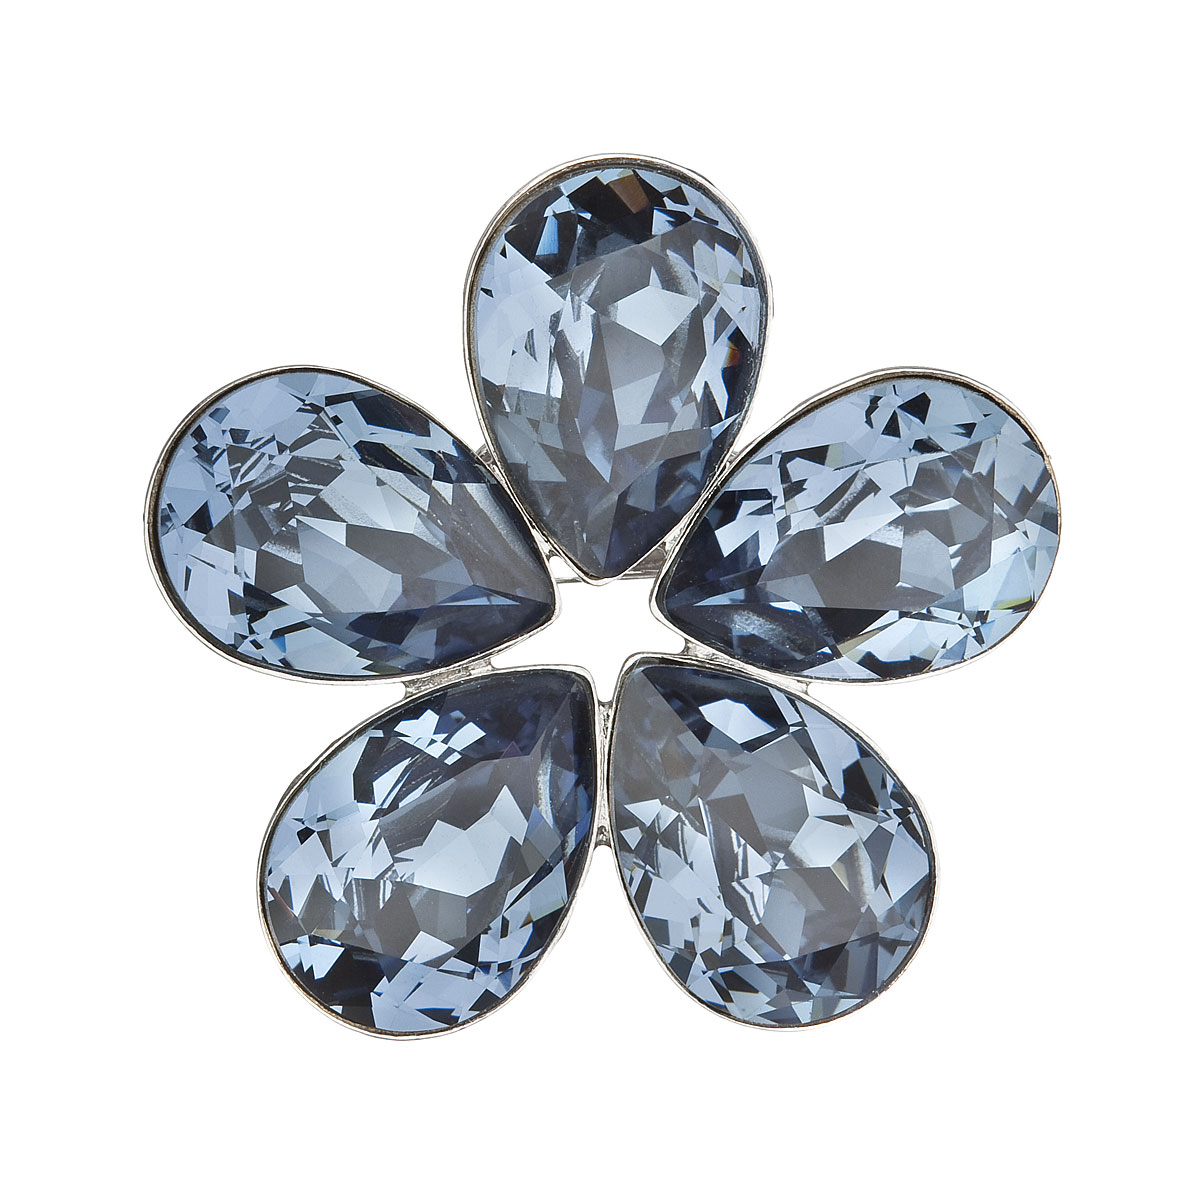 Brož bižuterie se Swarovski krystaly modrá kytička 58003.3 denim blue